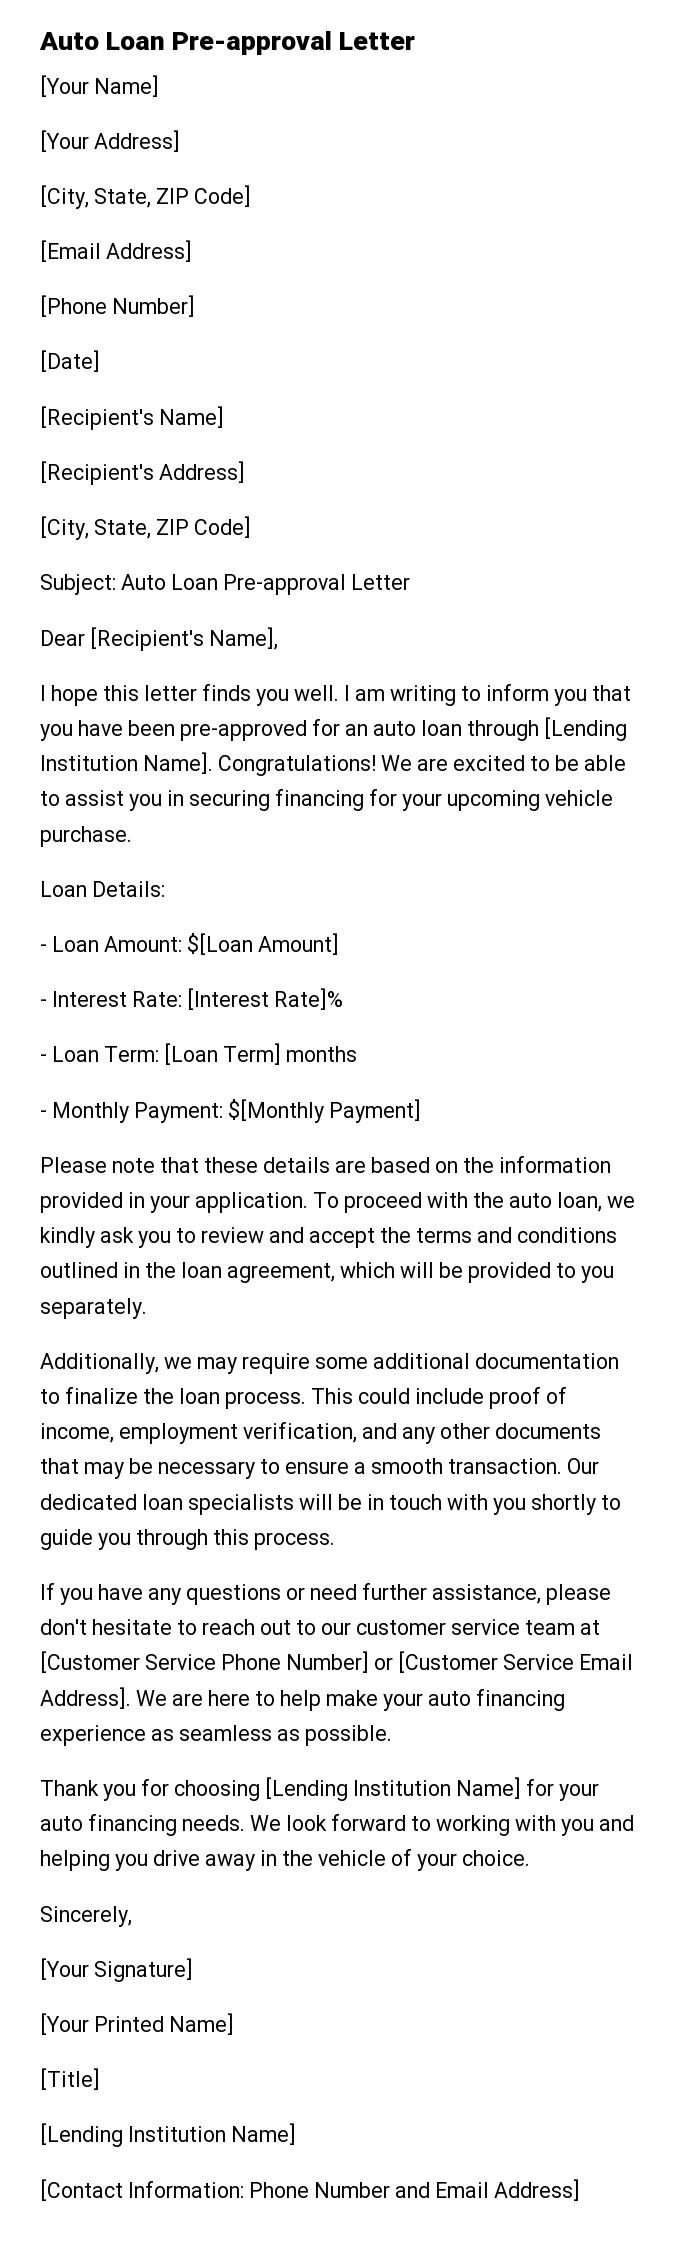 Auto Loan Pre-approval Letter